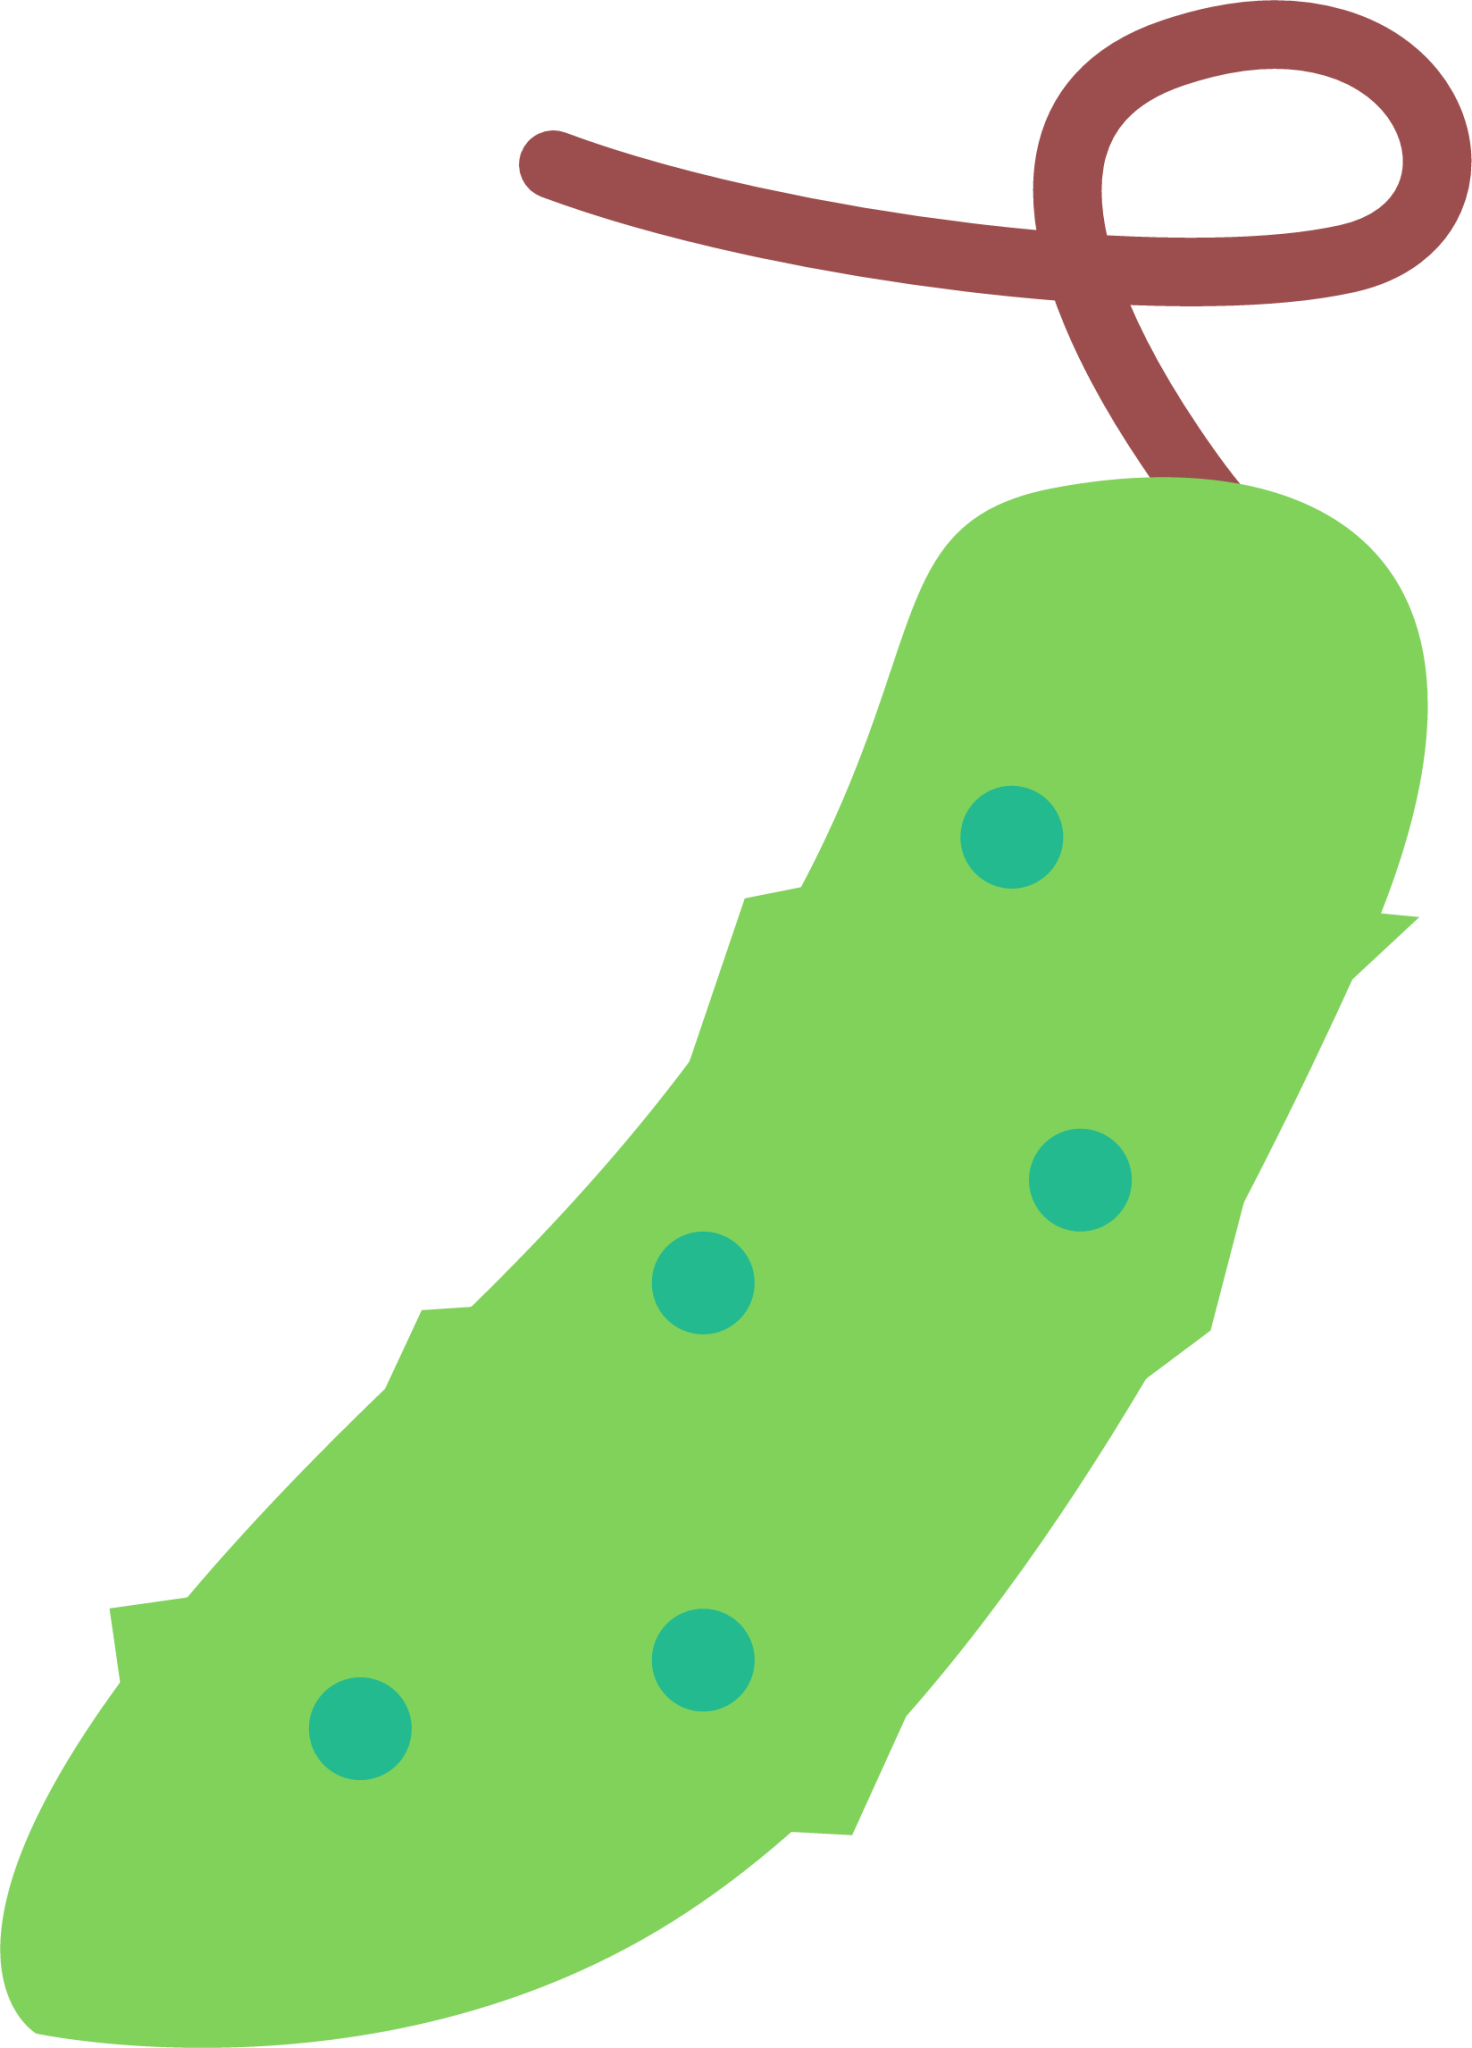 gren peas icon